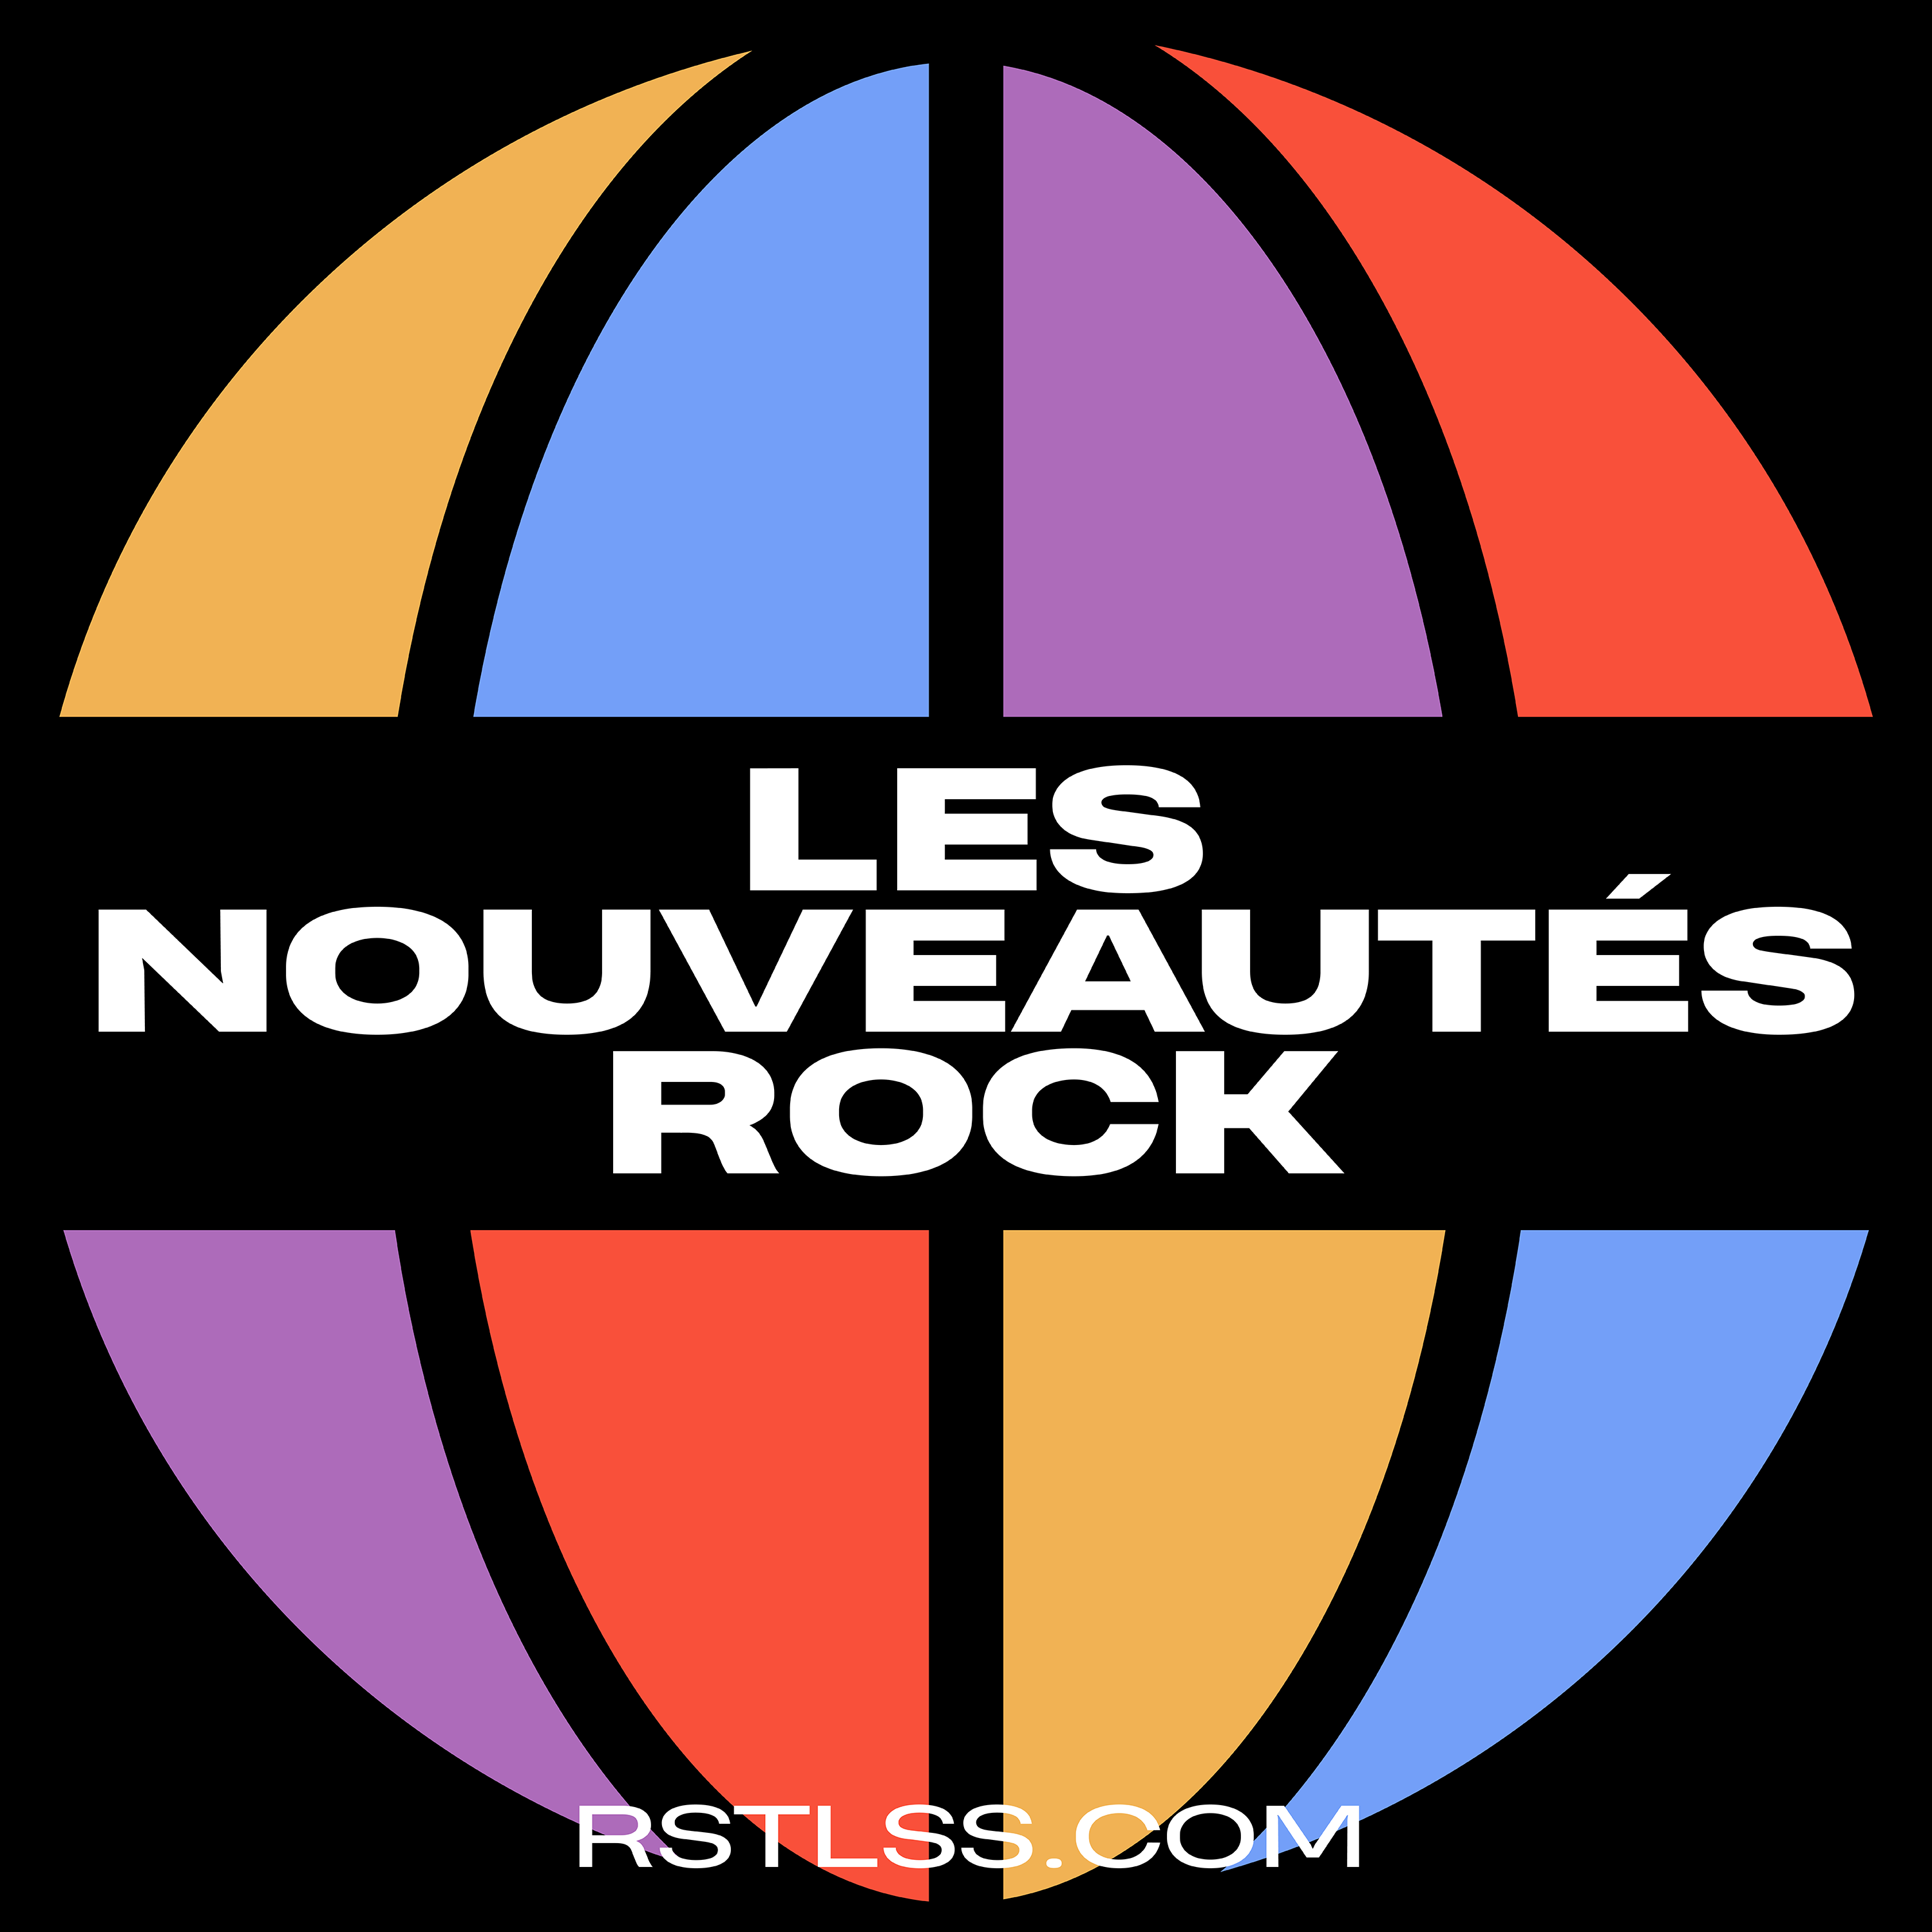 LES NOUVEAUTÉS ROCK #70 - The Struts, Tetrarch, Short Stack, Split Single